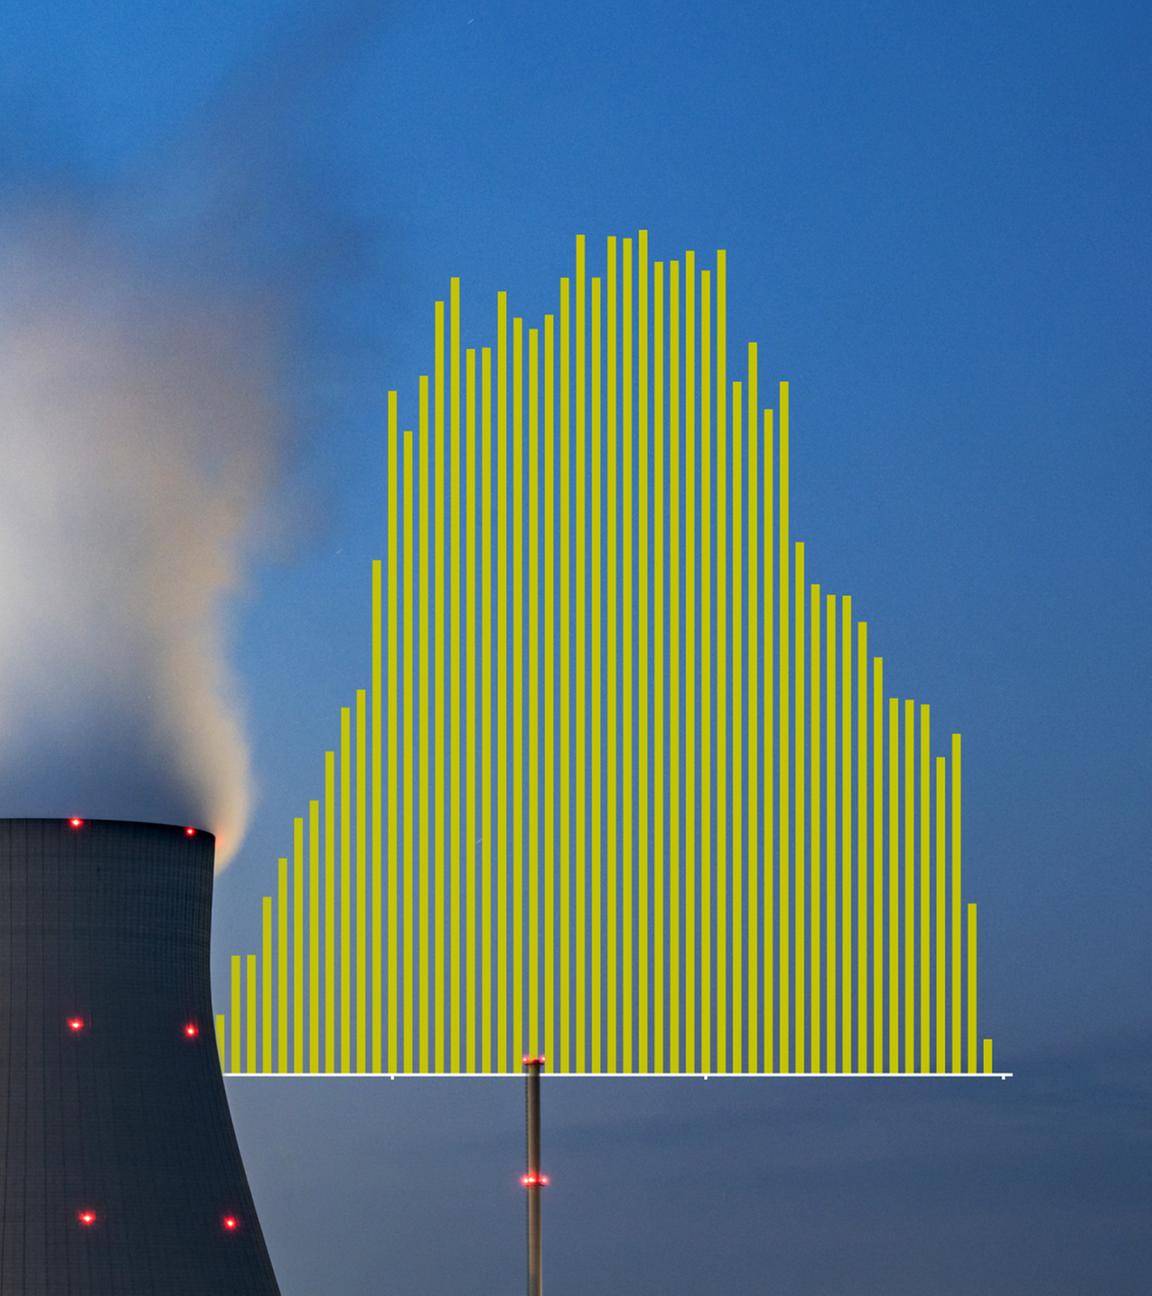 Der Kühlturm des Atomkraftwerk Isar 2. Dahinter ein Balkendiagramm des aus Atomkraft erzeugten Stroms.